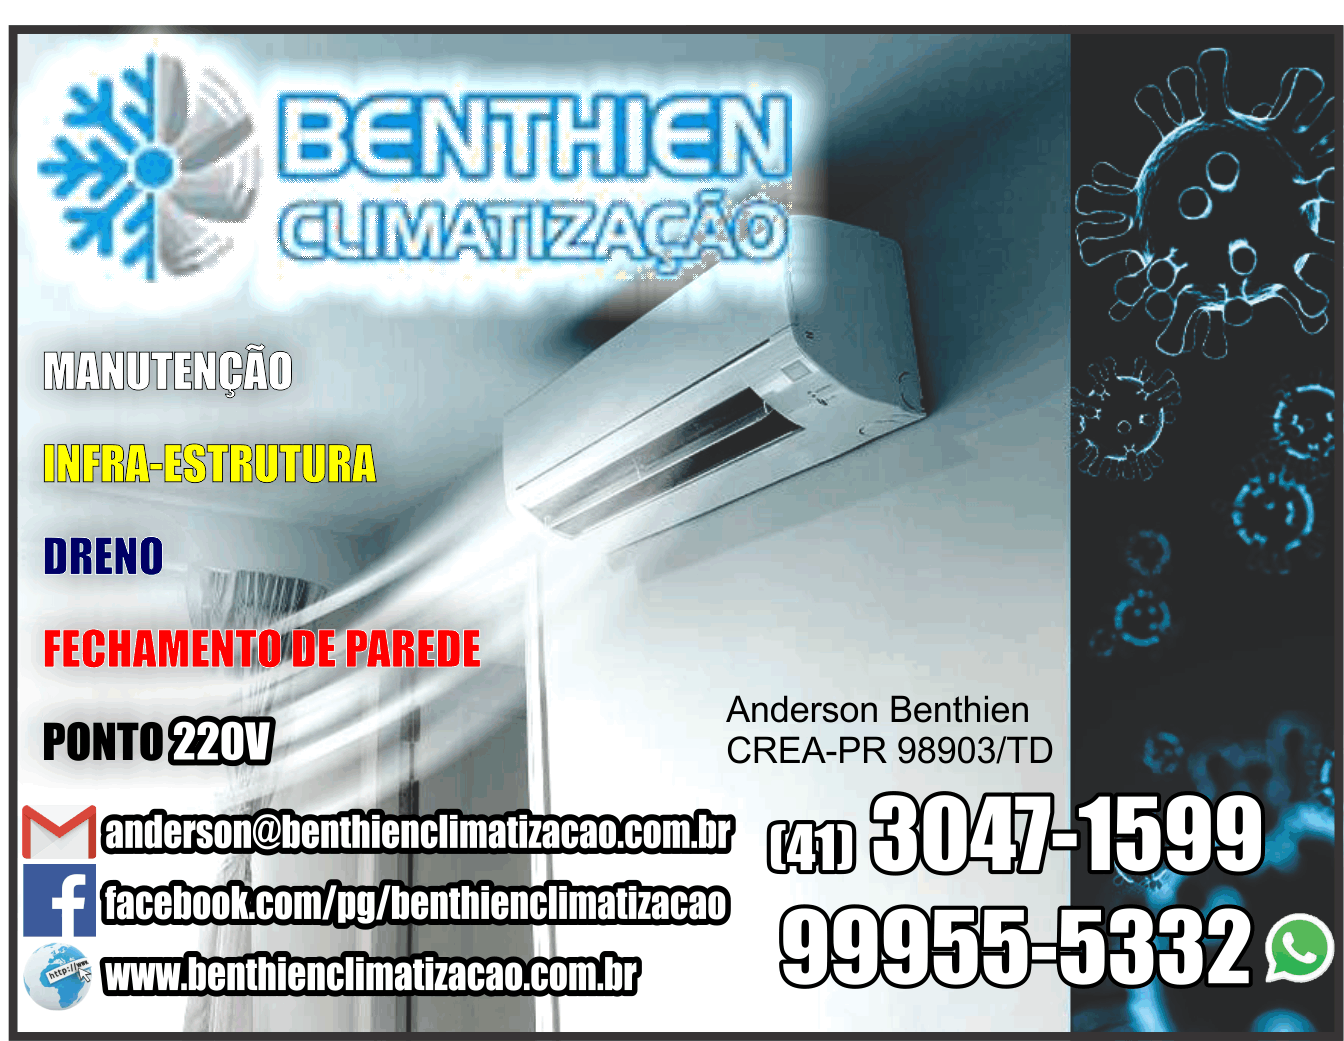 Benthien Climatização      Fones: (41) 3047-1599 / (41) 99955-5332